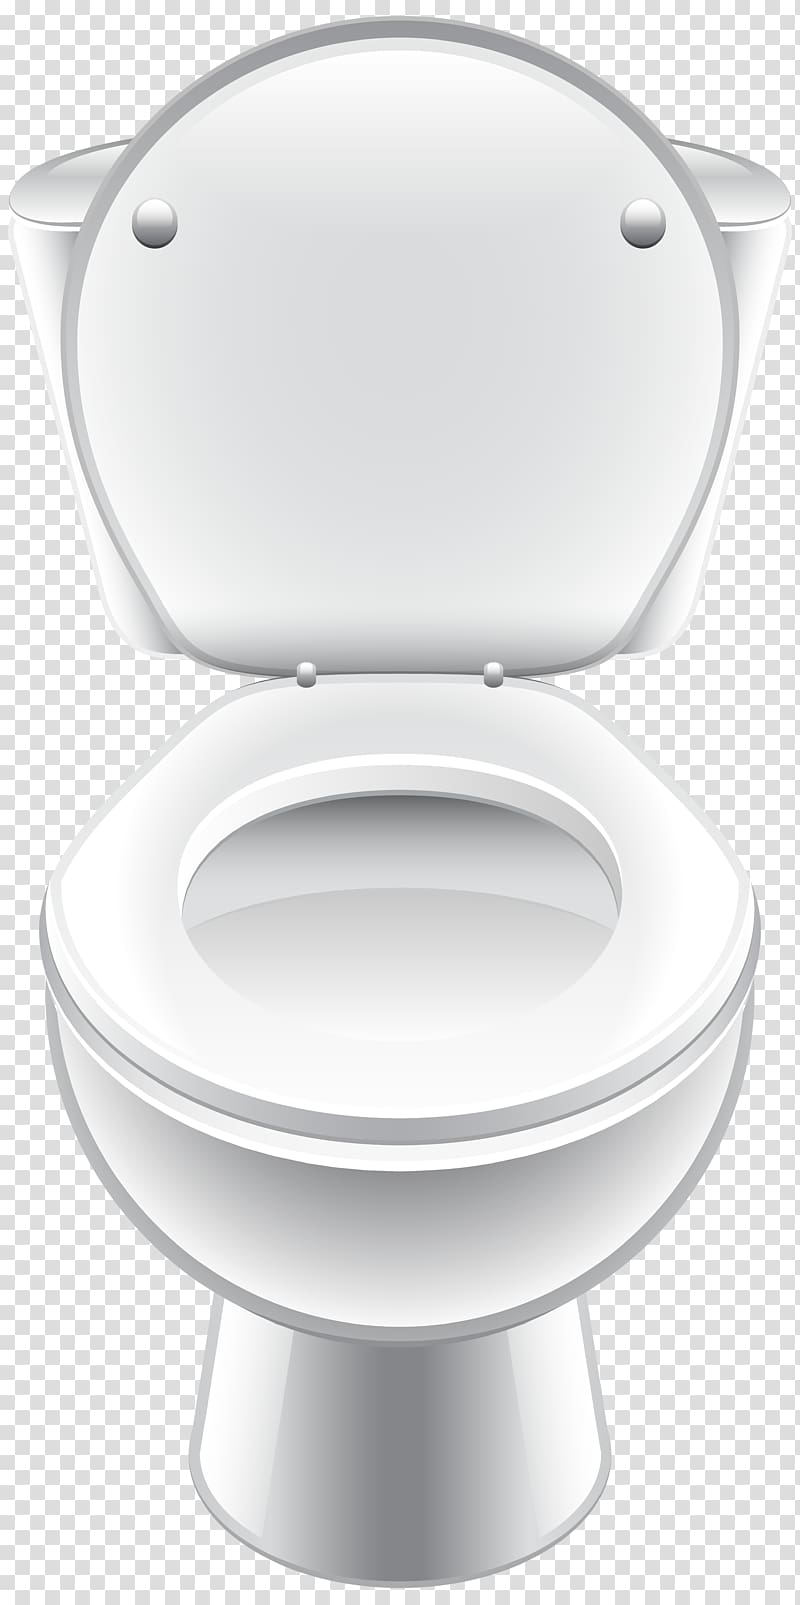 Toilet seat Bathroom Flush toilet, toilet transparent background PNG clipart